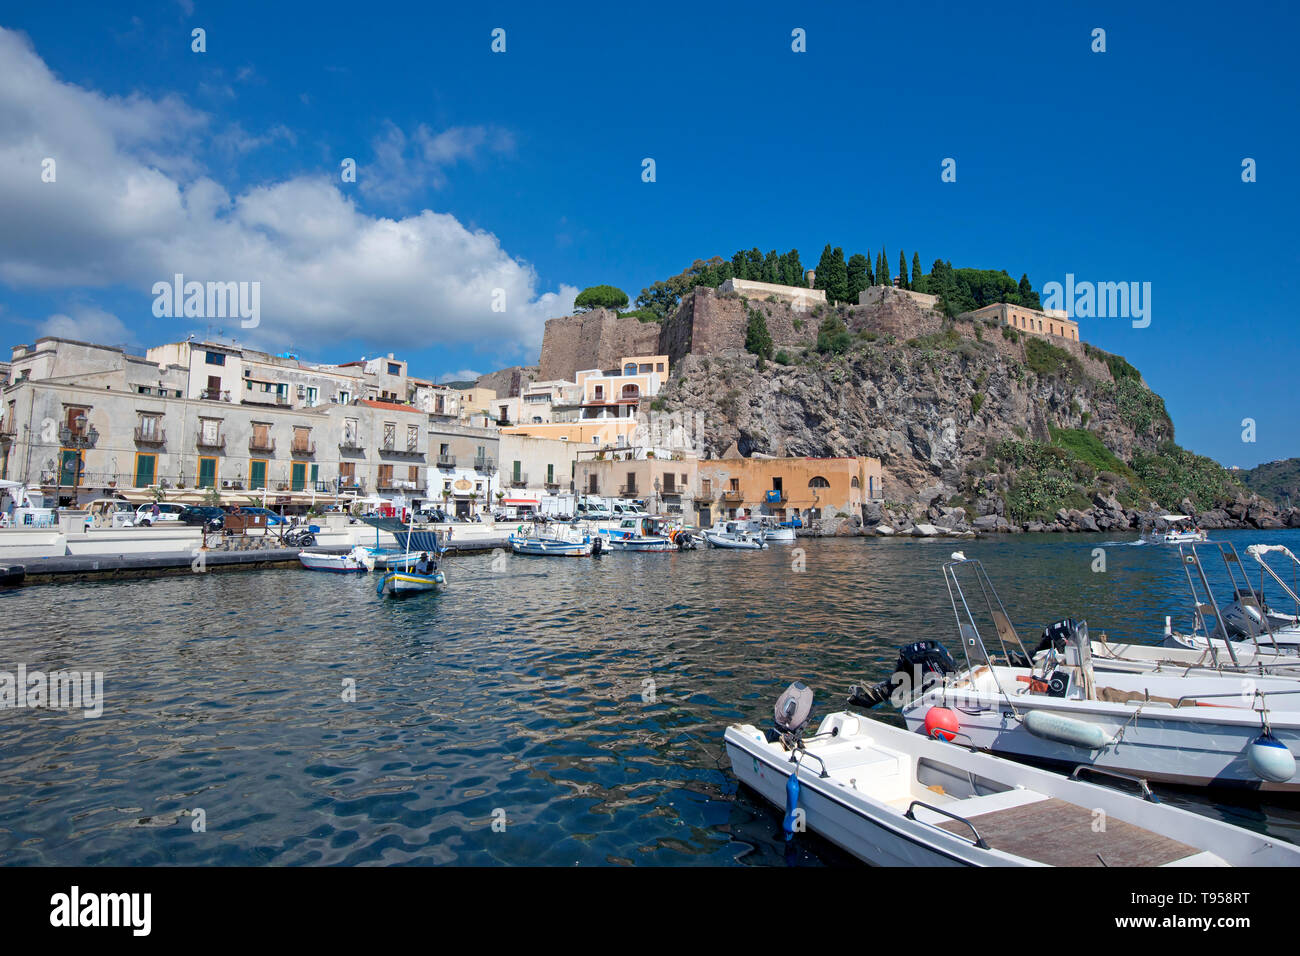   Toutes les images des bateaux de pêche à Marina Corta, ville de Lipari, l'île de Lipari, iles Eoliennes, Patrimoine Mondial de l'UNESCO Banque D'Images